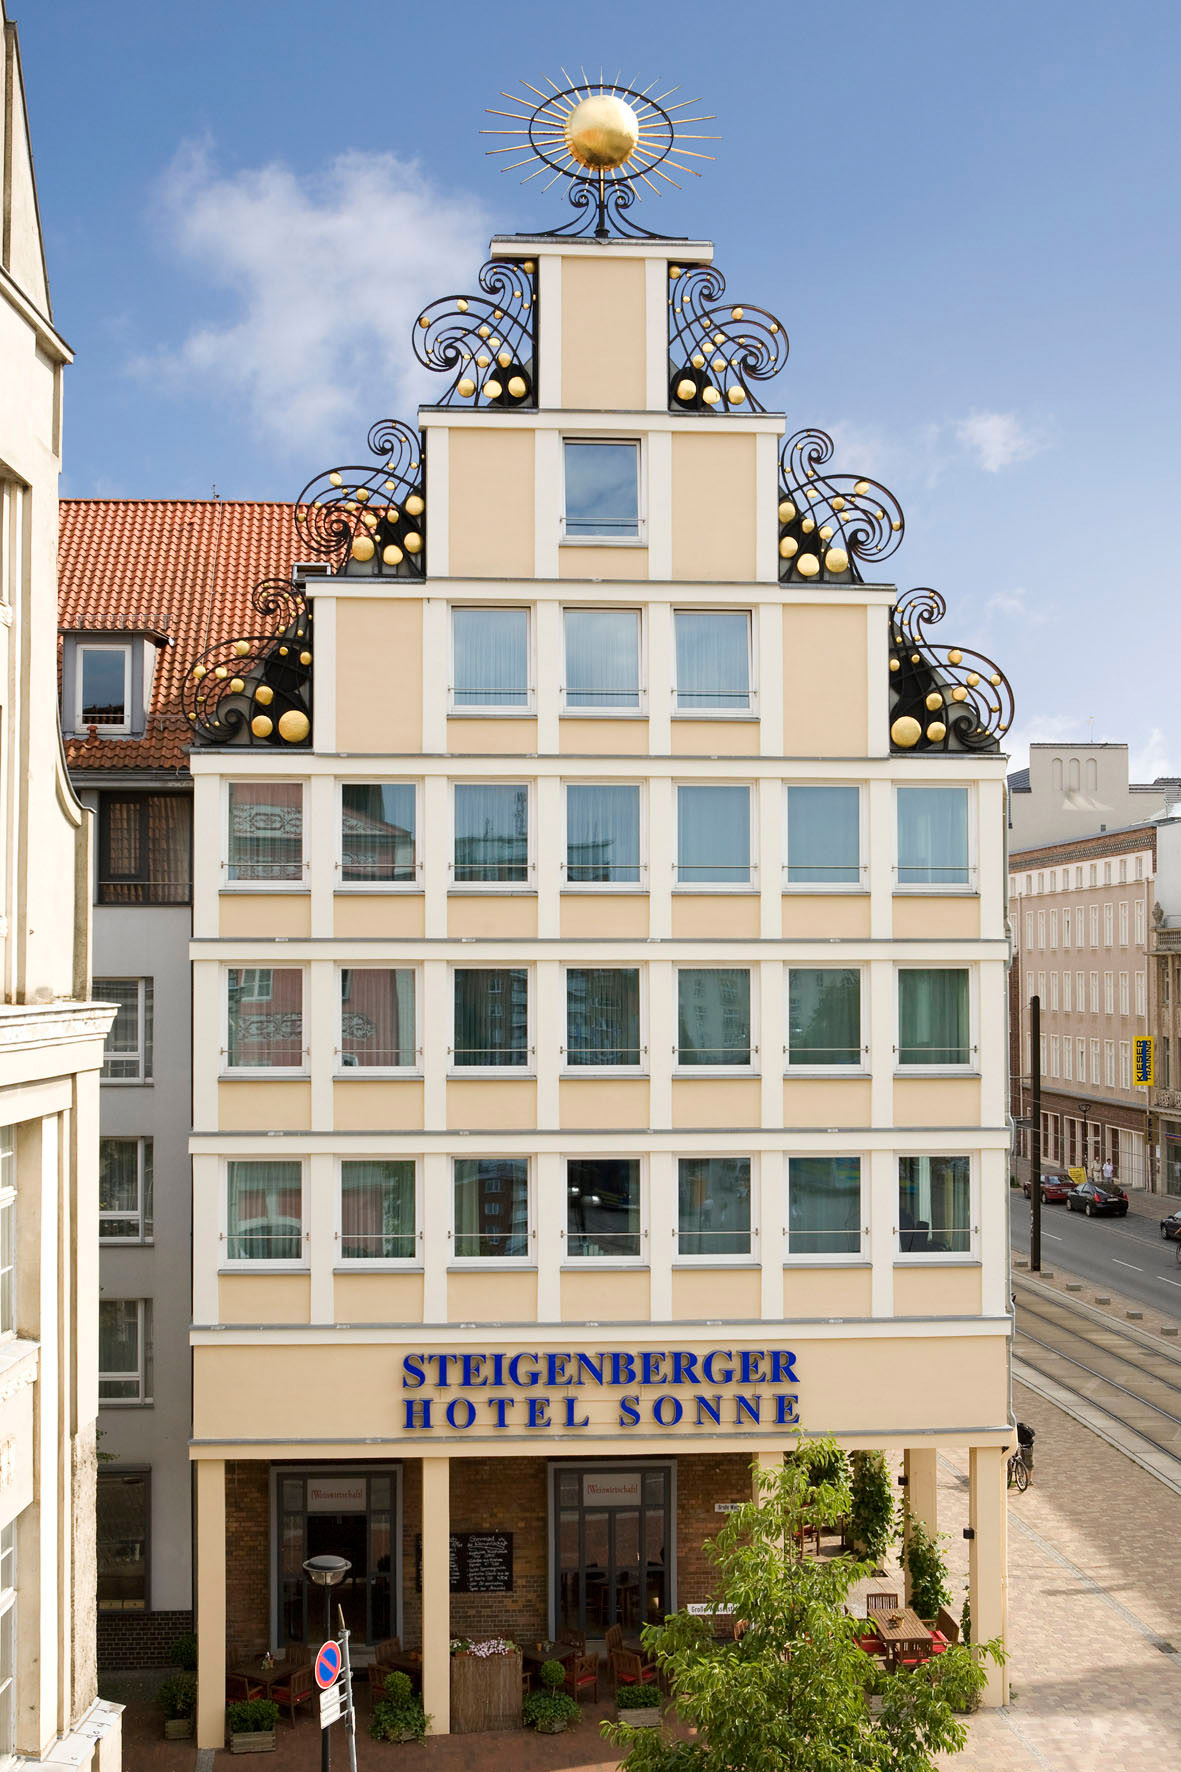 Aussenansicht des Steigenberger Hotel Sonne in Rostock.